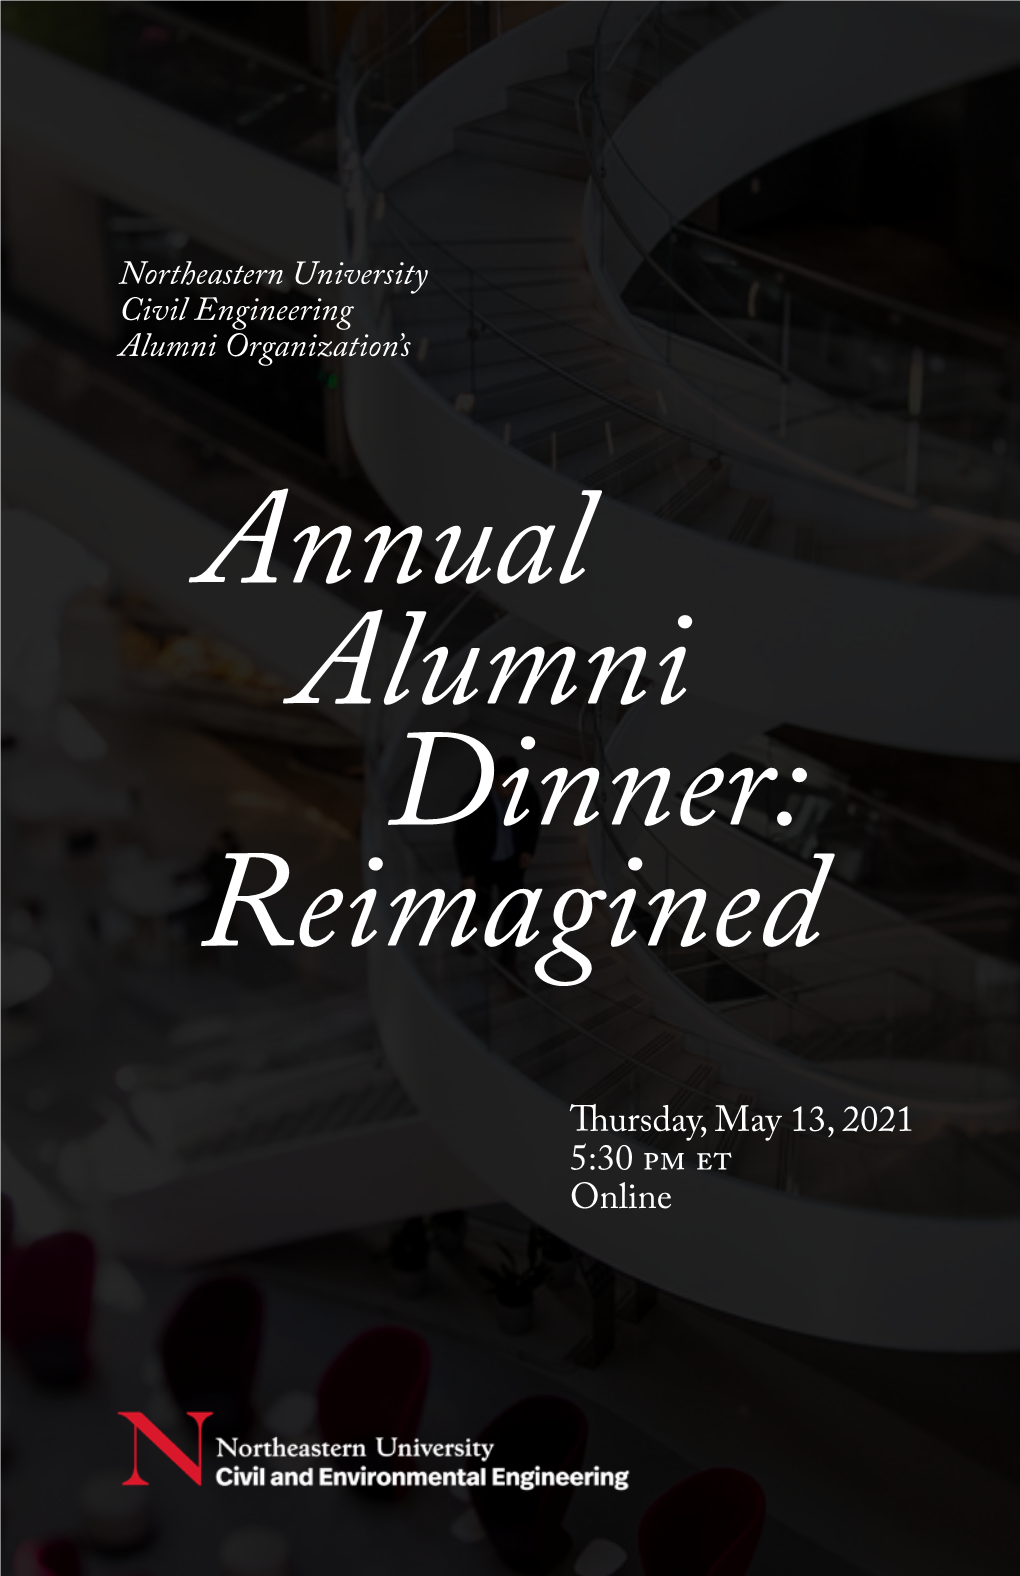 Annual Alumni Dinner: Reimagined